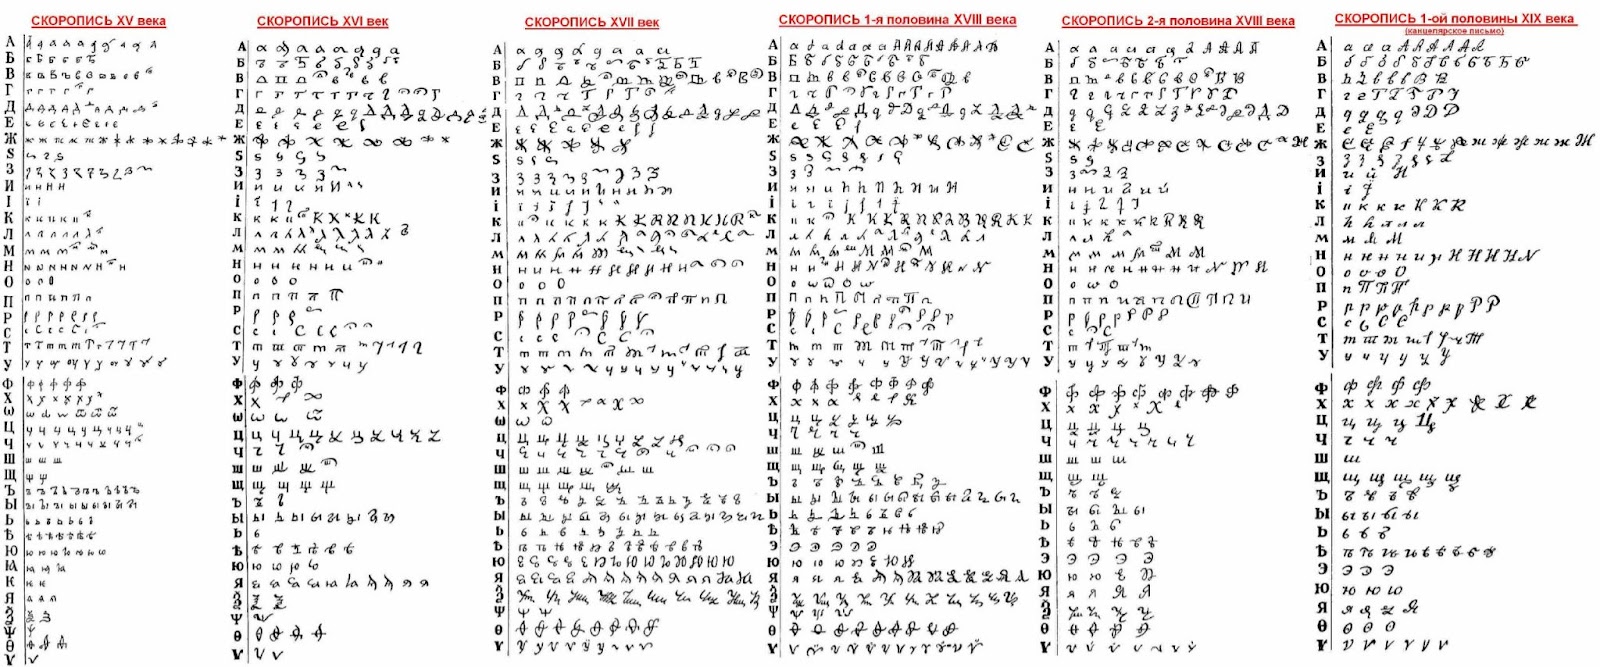 Пример разных вариантов написания букв скорописью, которой в основном и велись документы